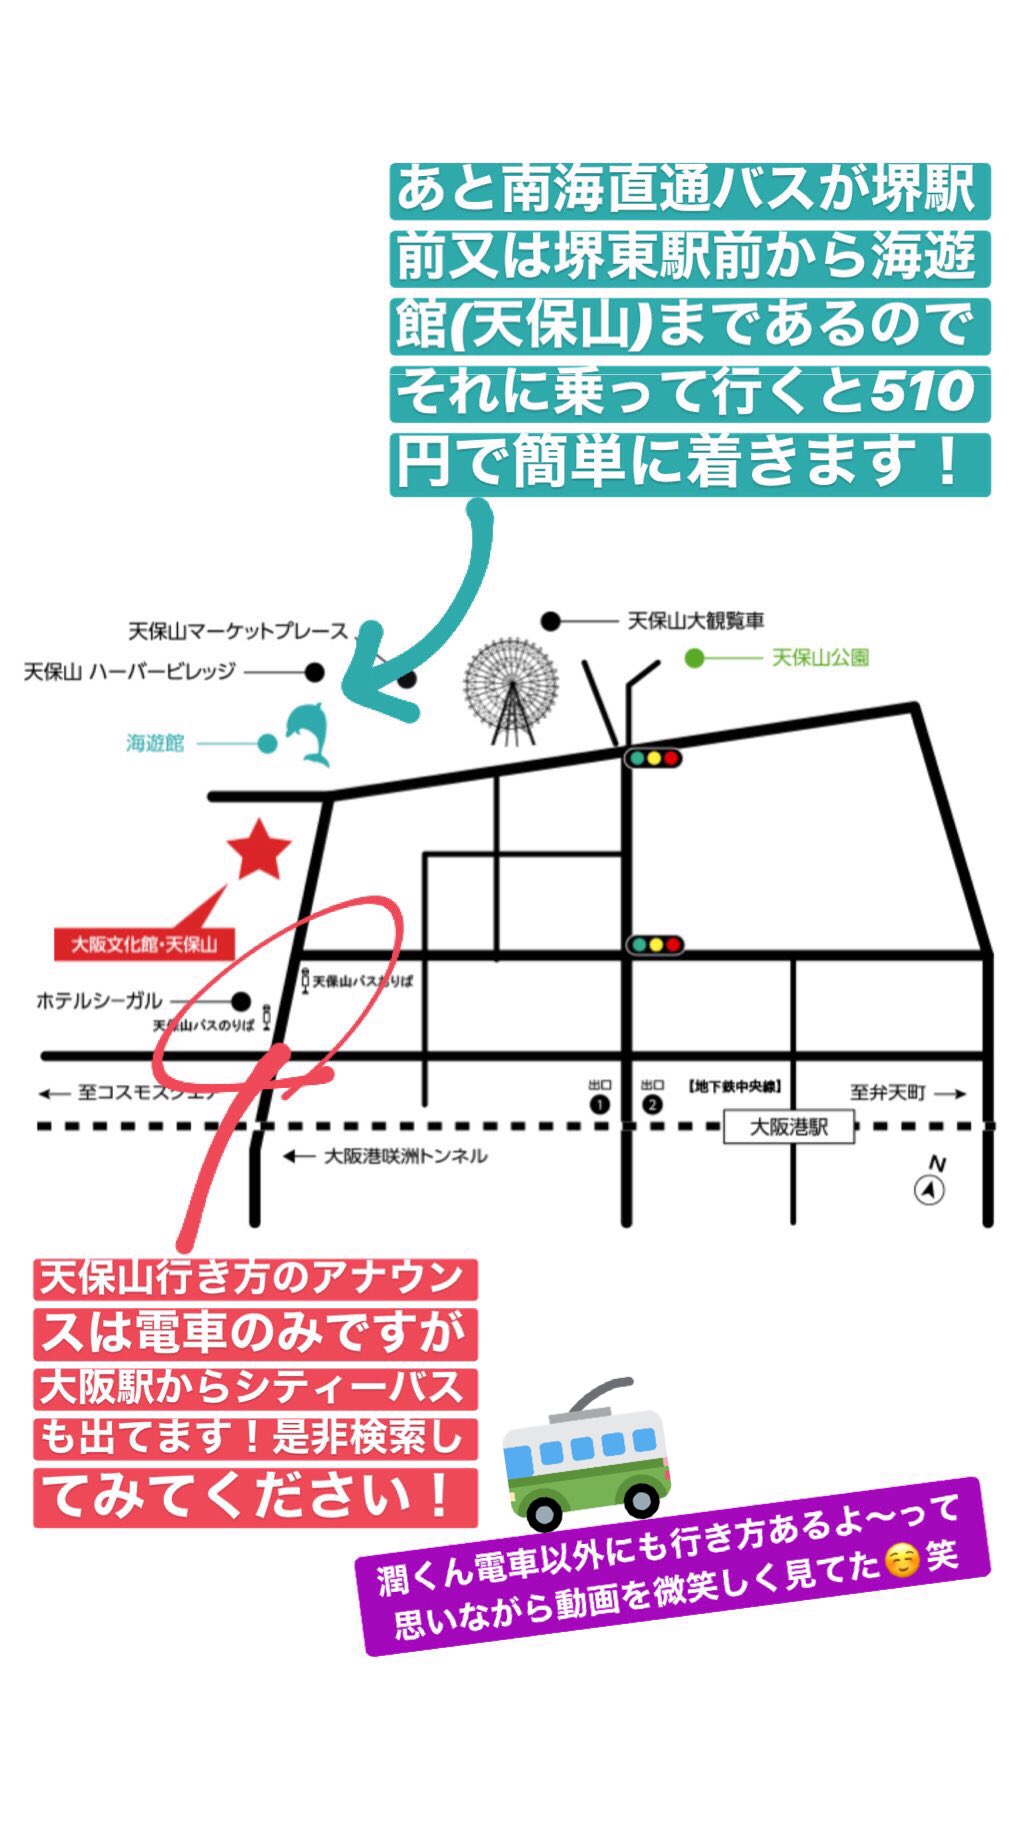 杏 展覧会遠征する方へ 潤くんは電車の行き方しか言ってませんが 大阪駅からシティバス 堺方面から南海バスが南港に向かって出てます 大阪文化館 天保山 で一度ネットで検索して 行き方の確認をして頂けたらと思います Arashi 嵐を旅する展覧